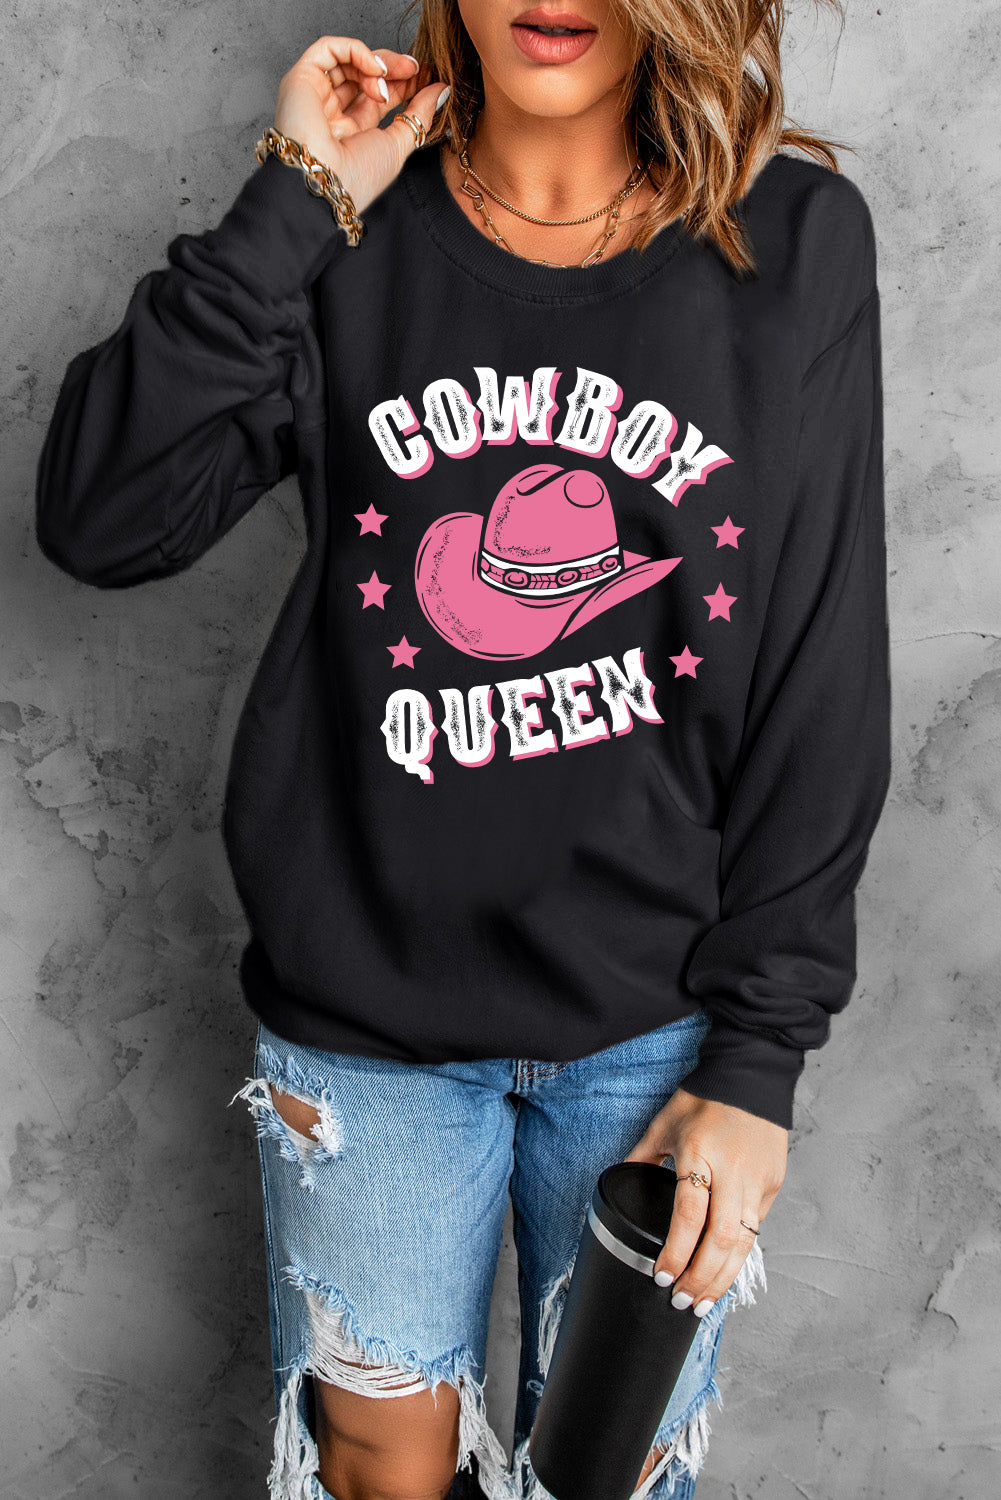 Black COWBOY QUEEN Hat Graphic Print Pullover Sweatshirt Graphic Sweatshirts JT's Designer Fashion